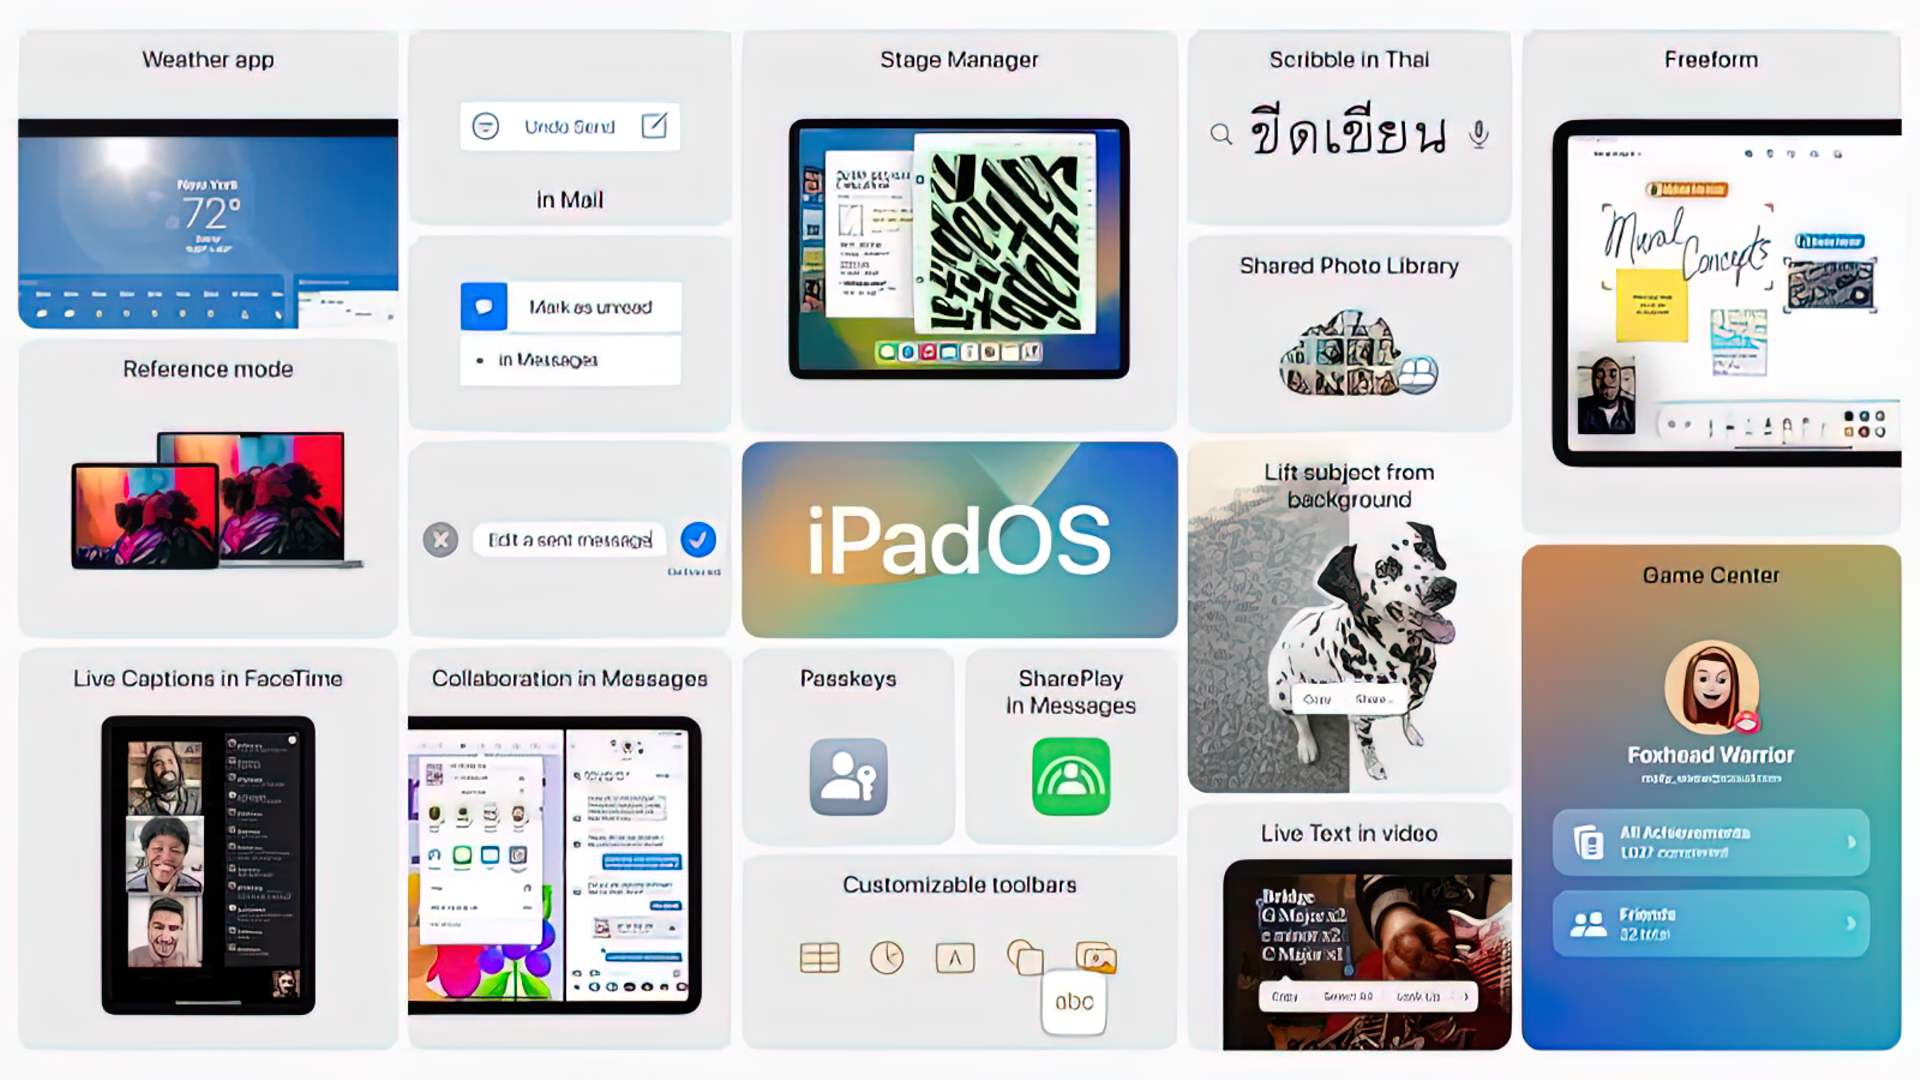 Il tema principale di iPadOS 16 è la collaborazione tra gli utenti